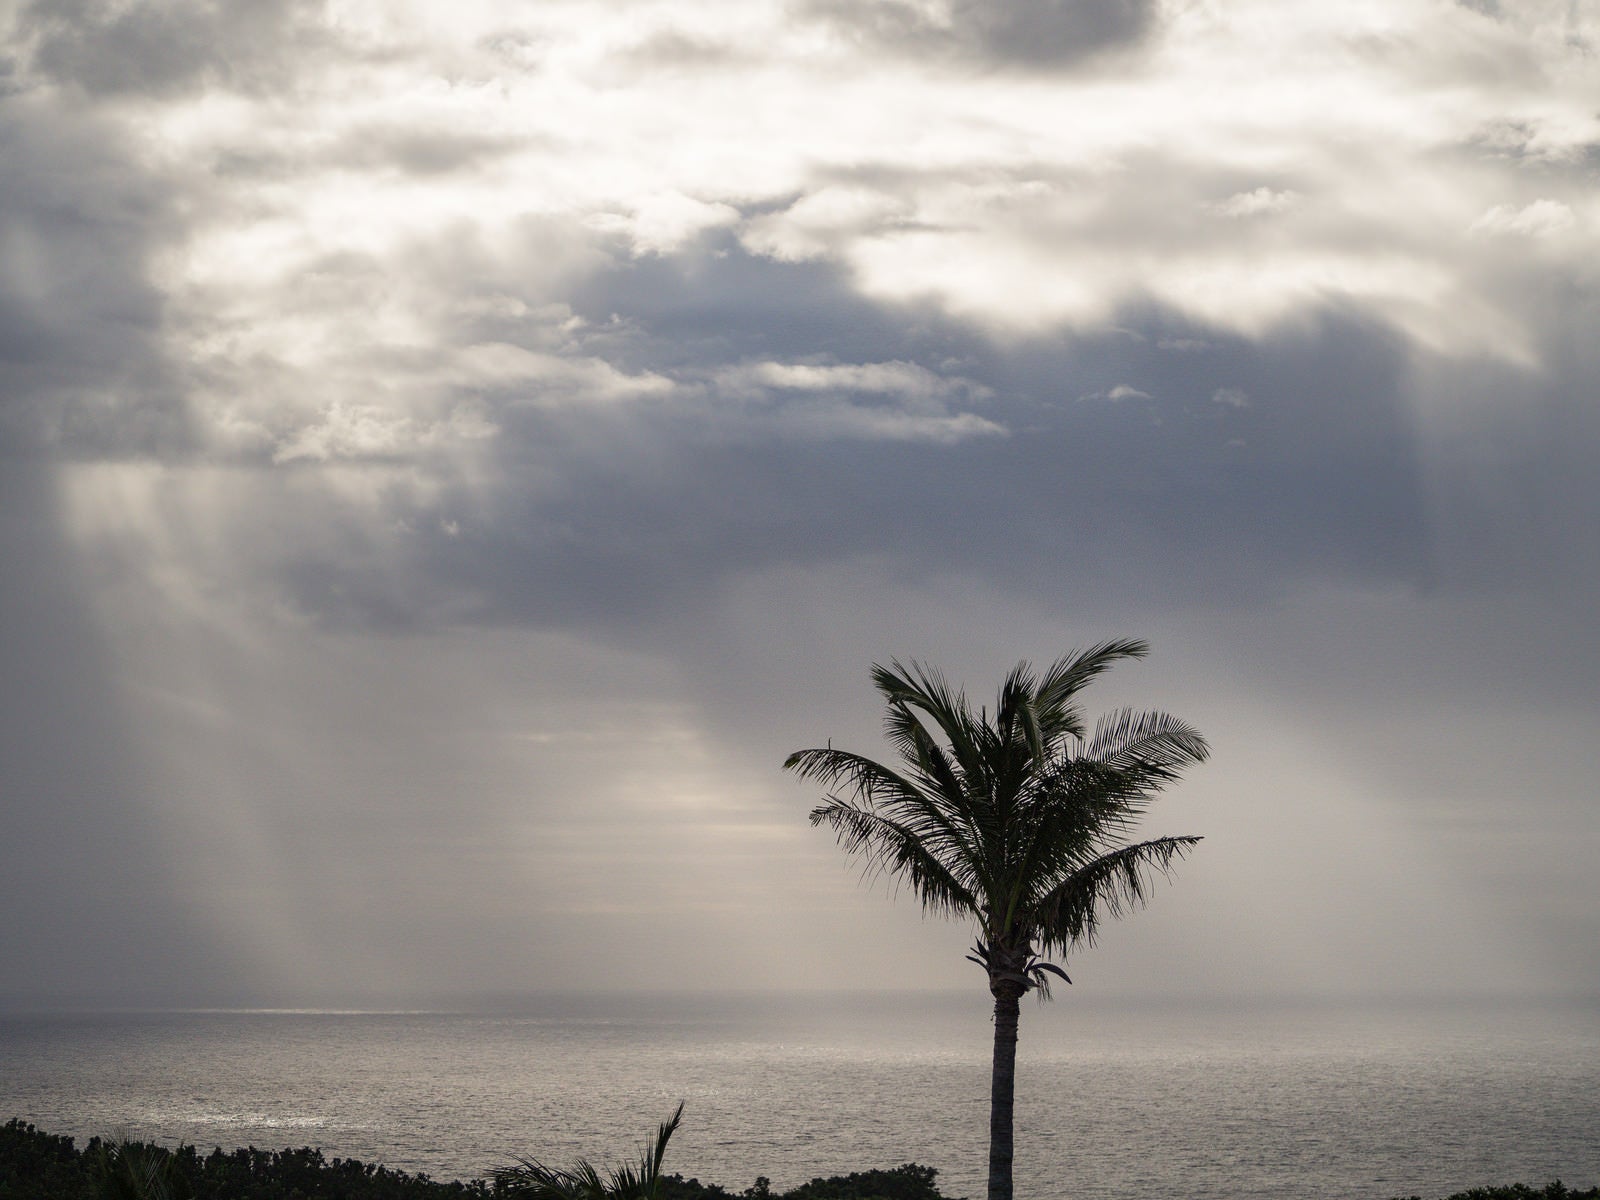 「硫黄島から見えた黒い雲から海へと降りる天使の梯子」の写真